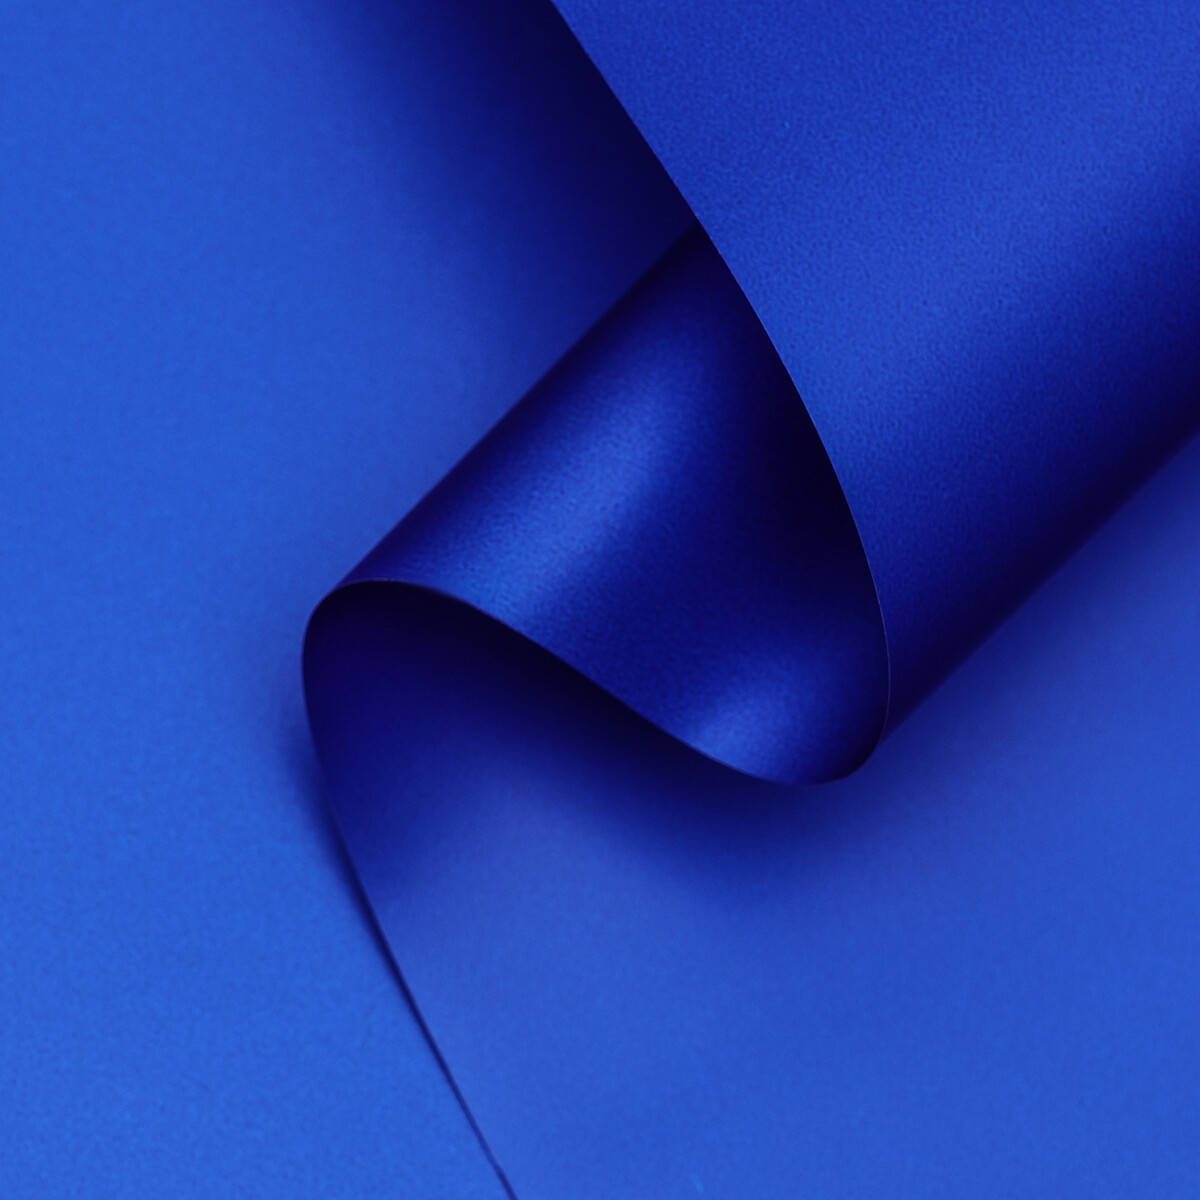 Пленка матовая, базовые цвета, синяя, 0,5 х 10 м, 65 мкм пленка матовая 0 58 x 10 м 70 мкм синий